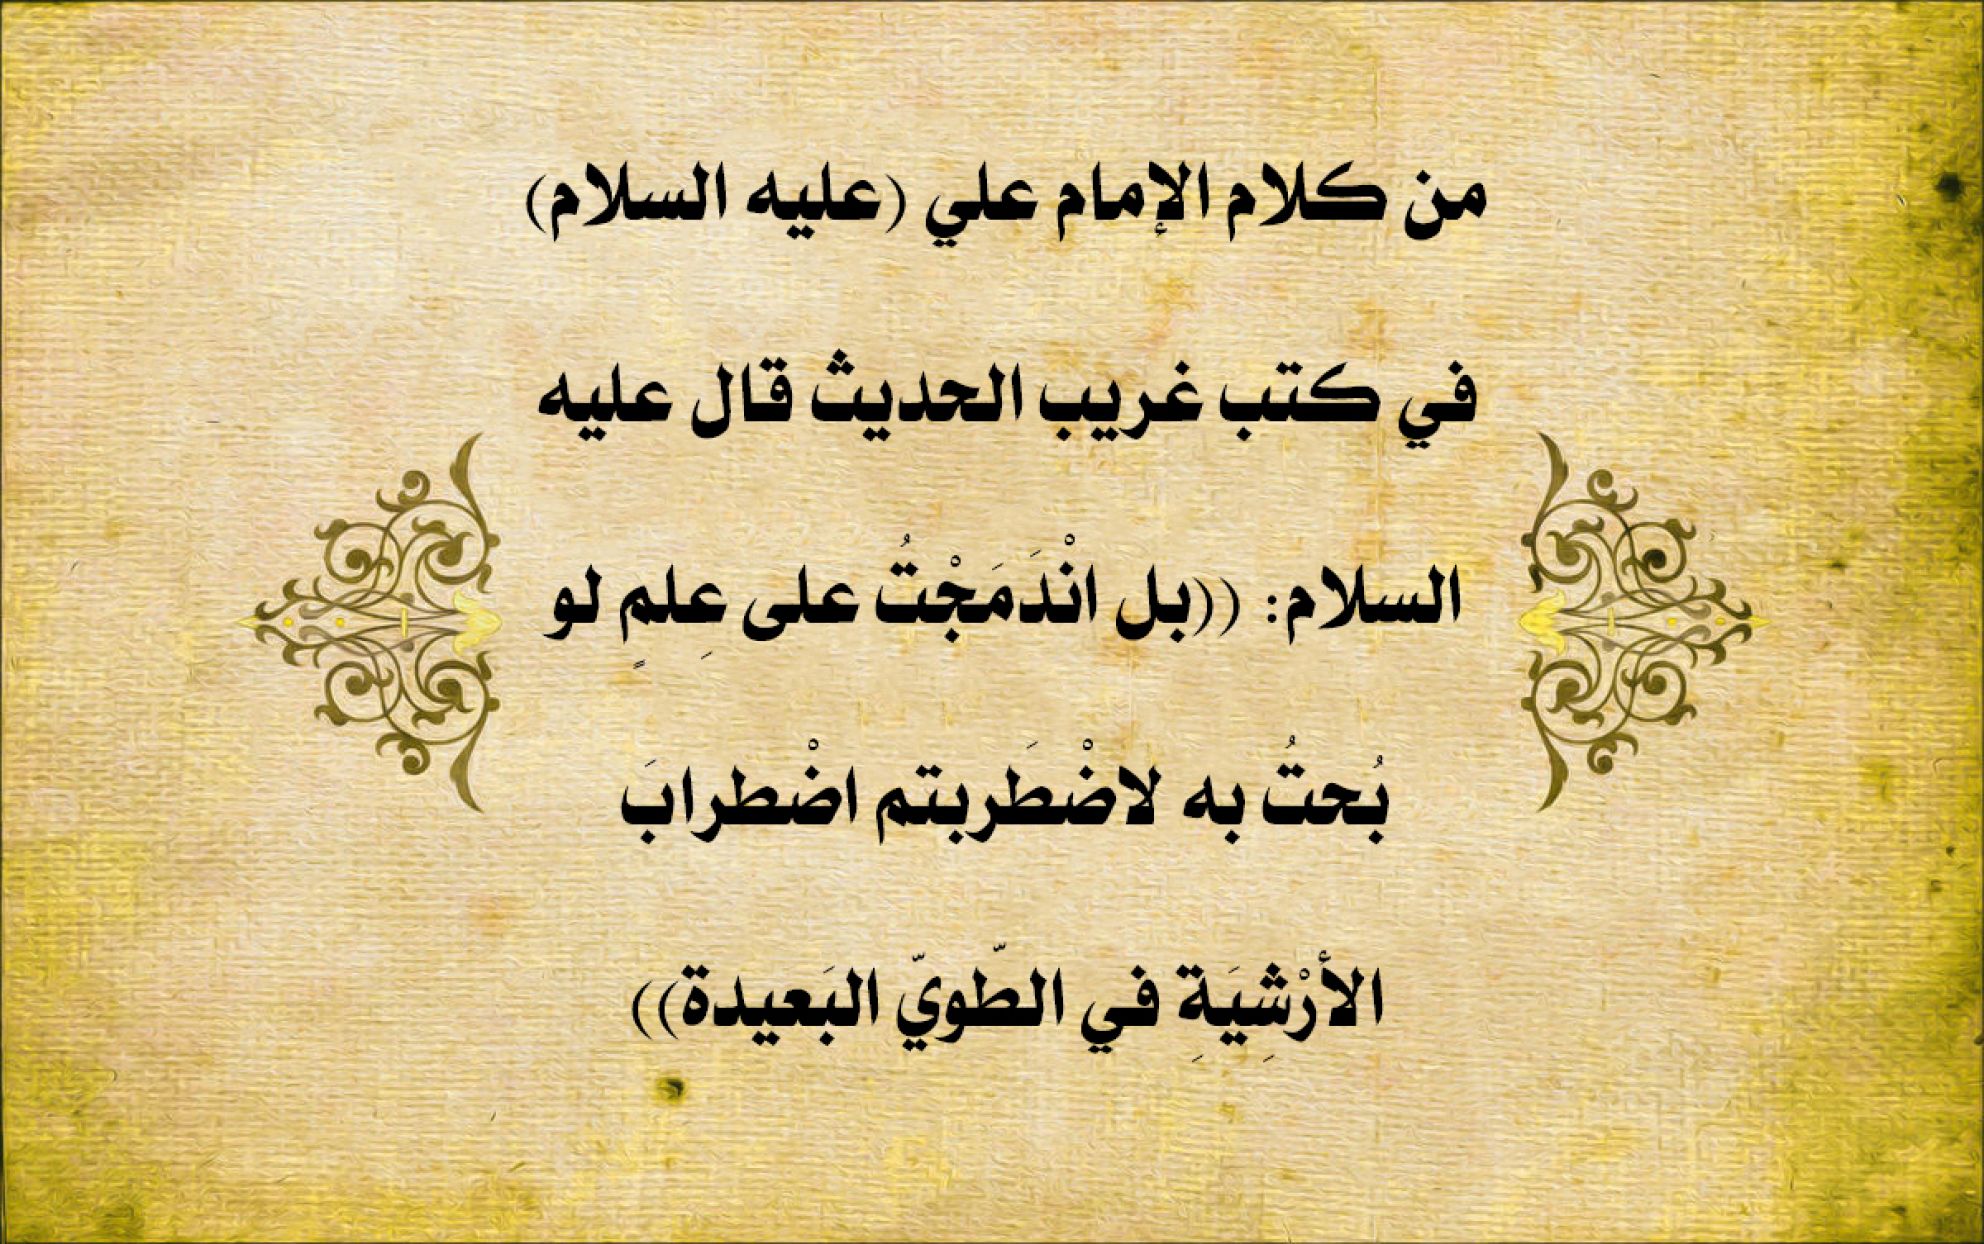 من كلام الإمام علي (عليه السلام) في كتب غريب الحديث قال عليه السلام: ((بل انْدَمَجْتُ على عِلمٍ لو بُحتُ به لاضْطَربتم اضْطرابَ الأرْشِيَةِ في الطّويّ البَعيدة))